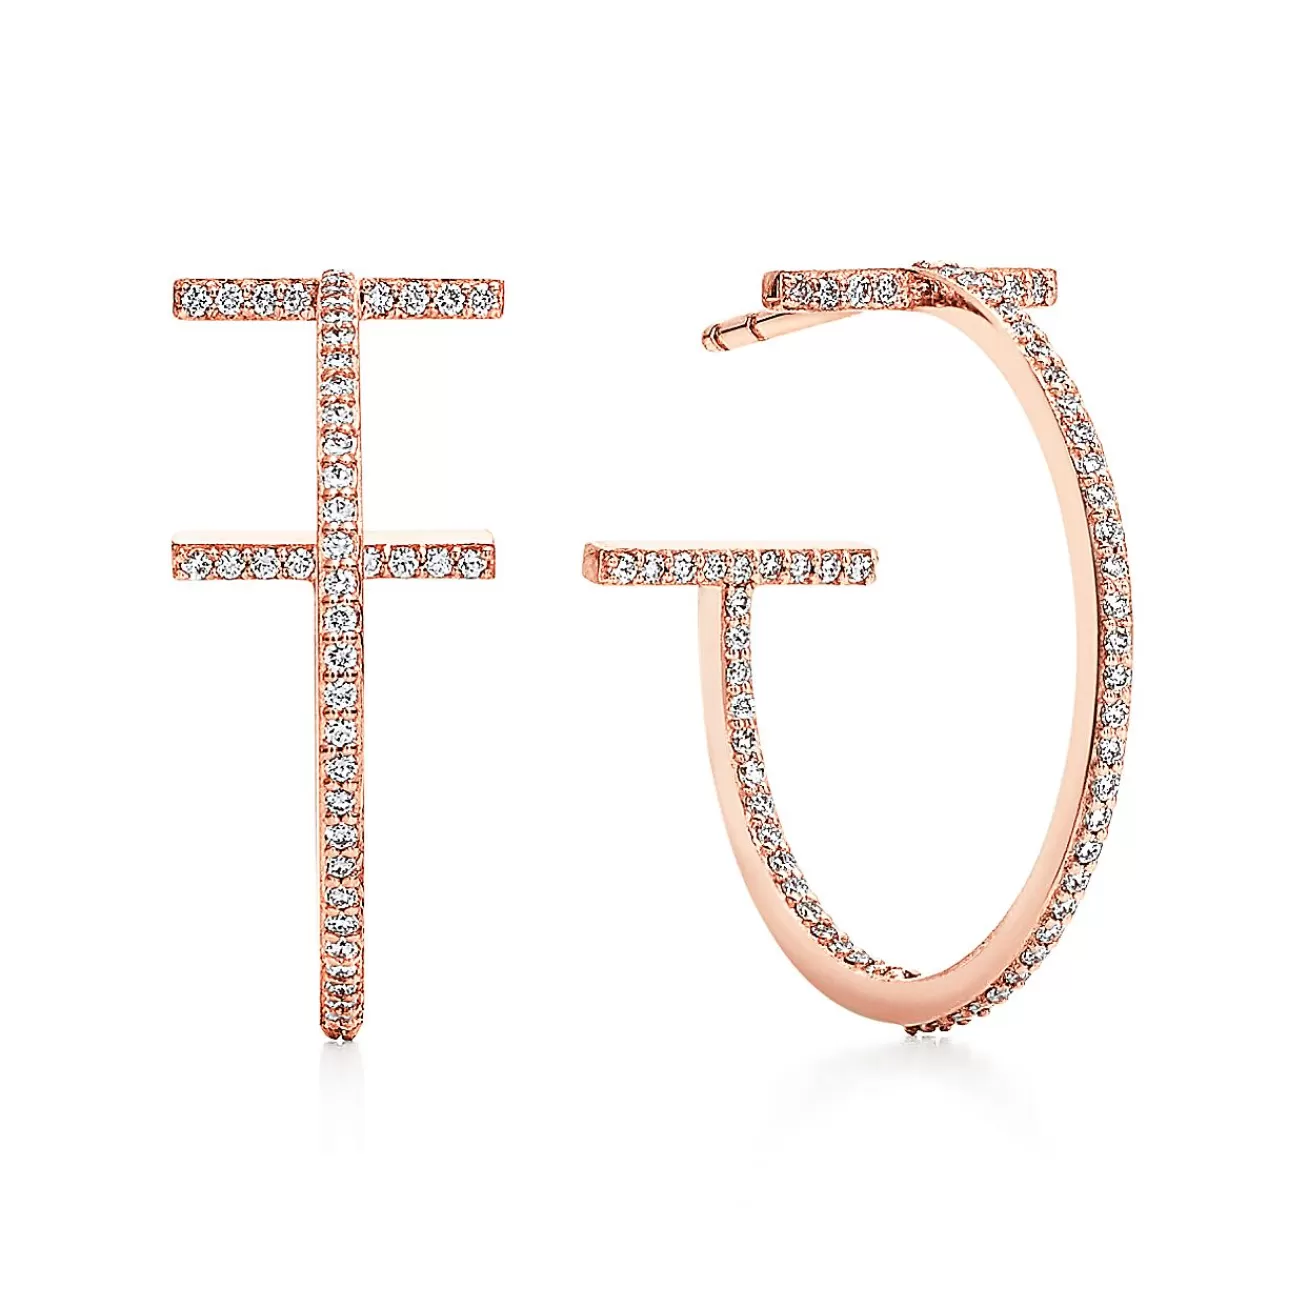 Tiffany & Co. Tiffany T diamond hoop earrings in 18k rose gold, medium. | ^ Earrings | Hoop Earrings